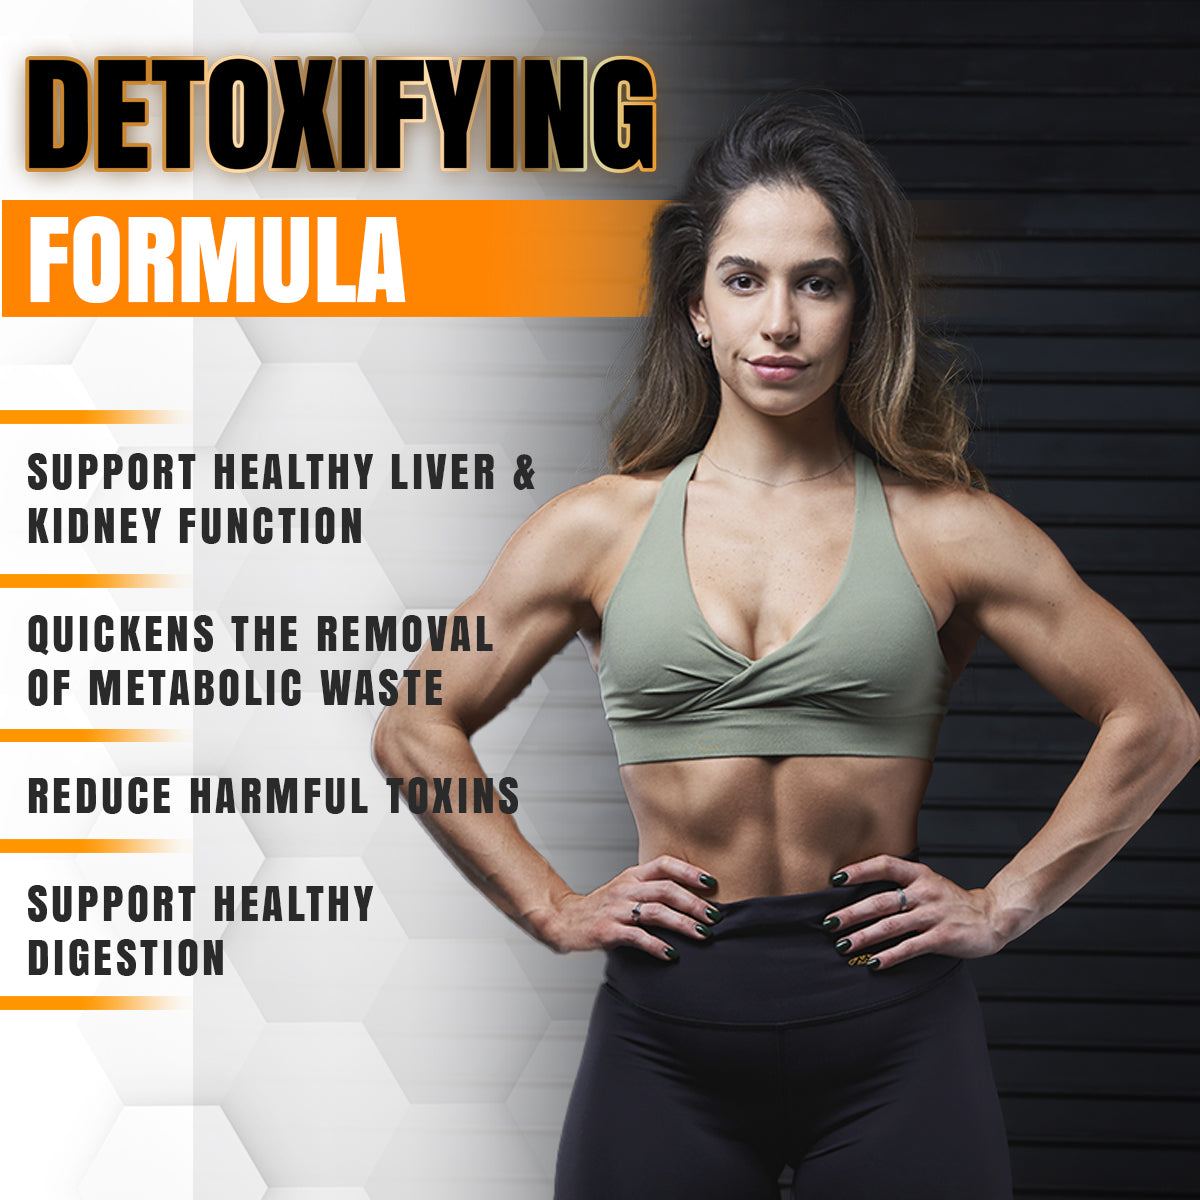 DTOX™ - Detoxifying Formula